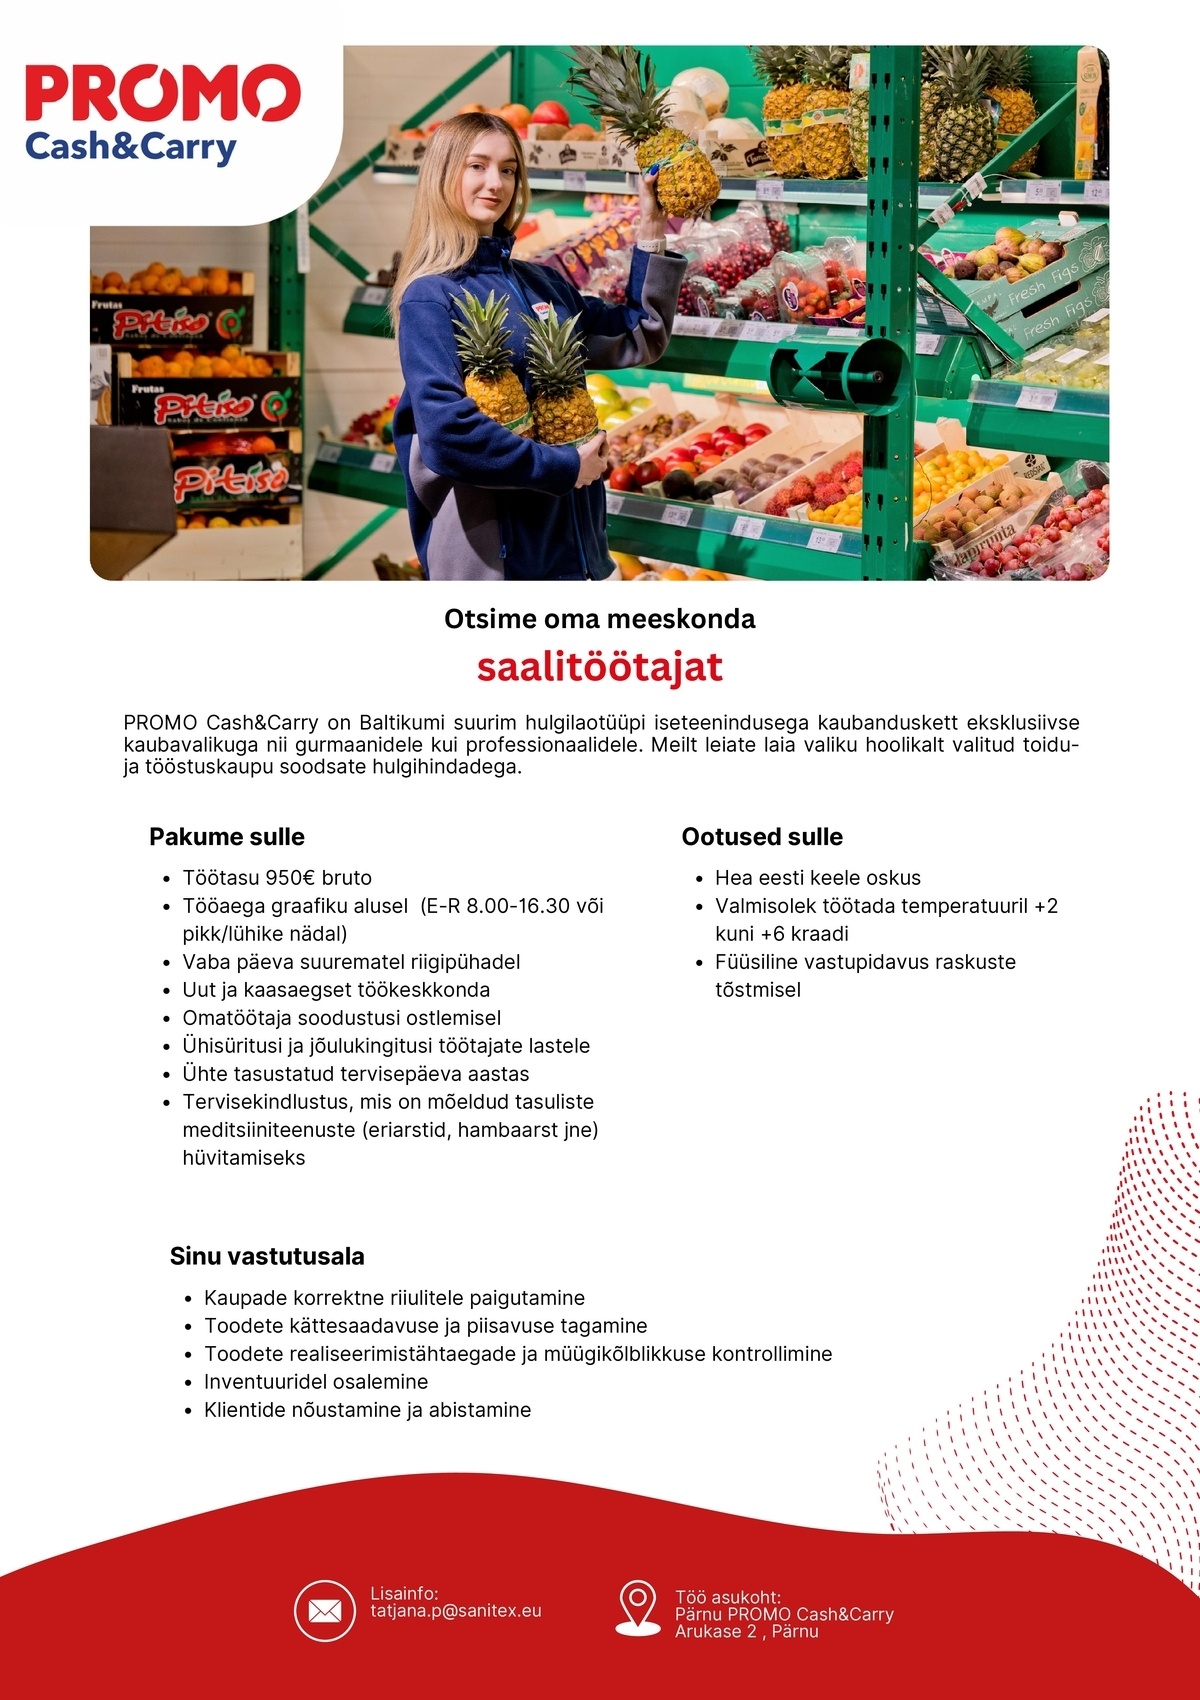 Sanitex OÜ Saalitöötaja termokaupade müügisaalis Pärnu Promo Cash&Carry hulgikaupluses